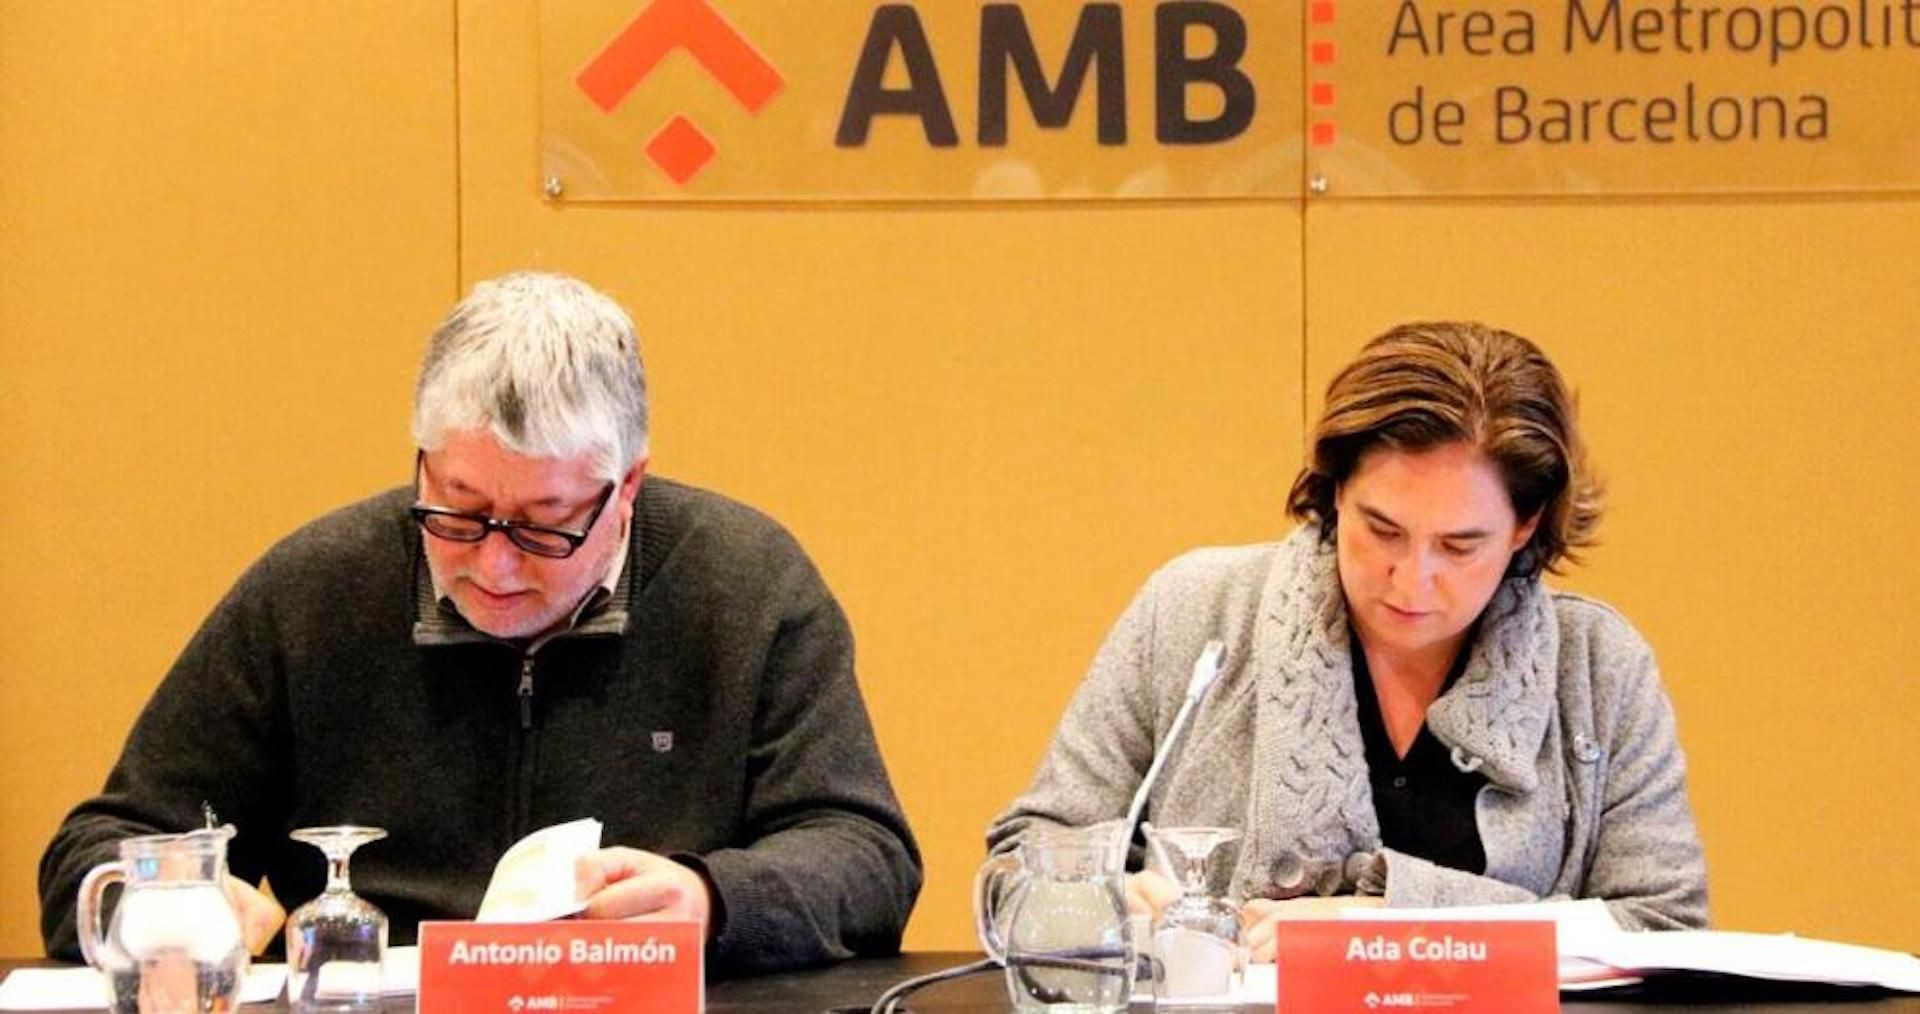 Antonio Balmón y Ada Colau, en un acto del AMB